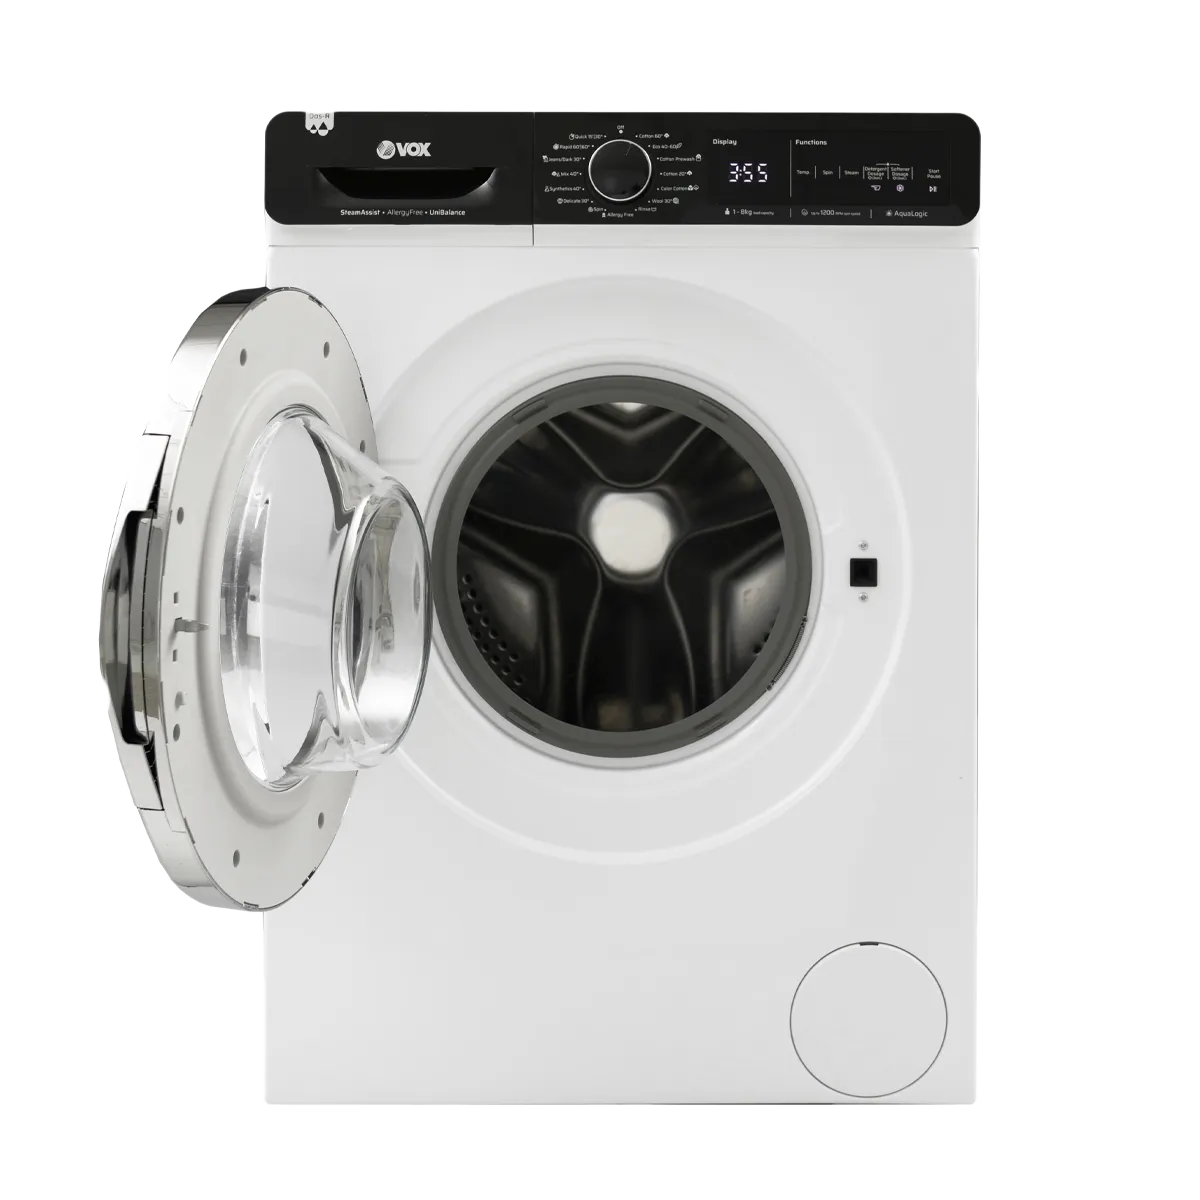 Washing machine WM1288-SAT2T15D 